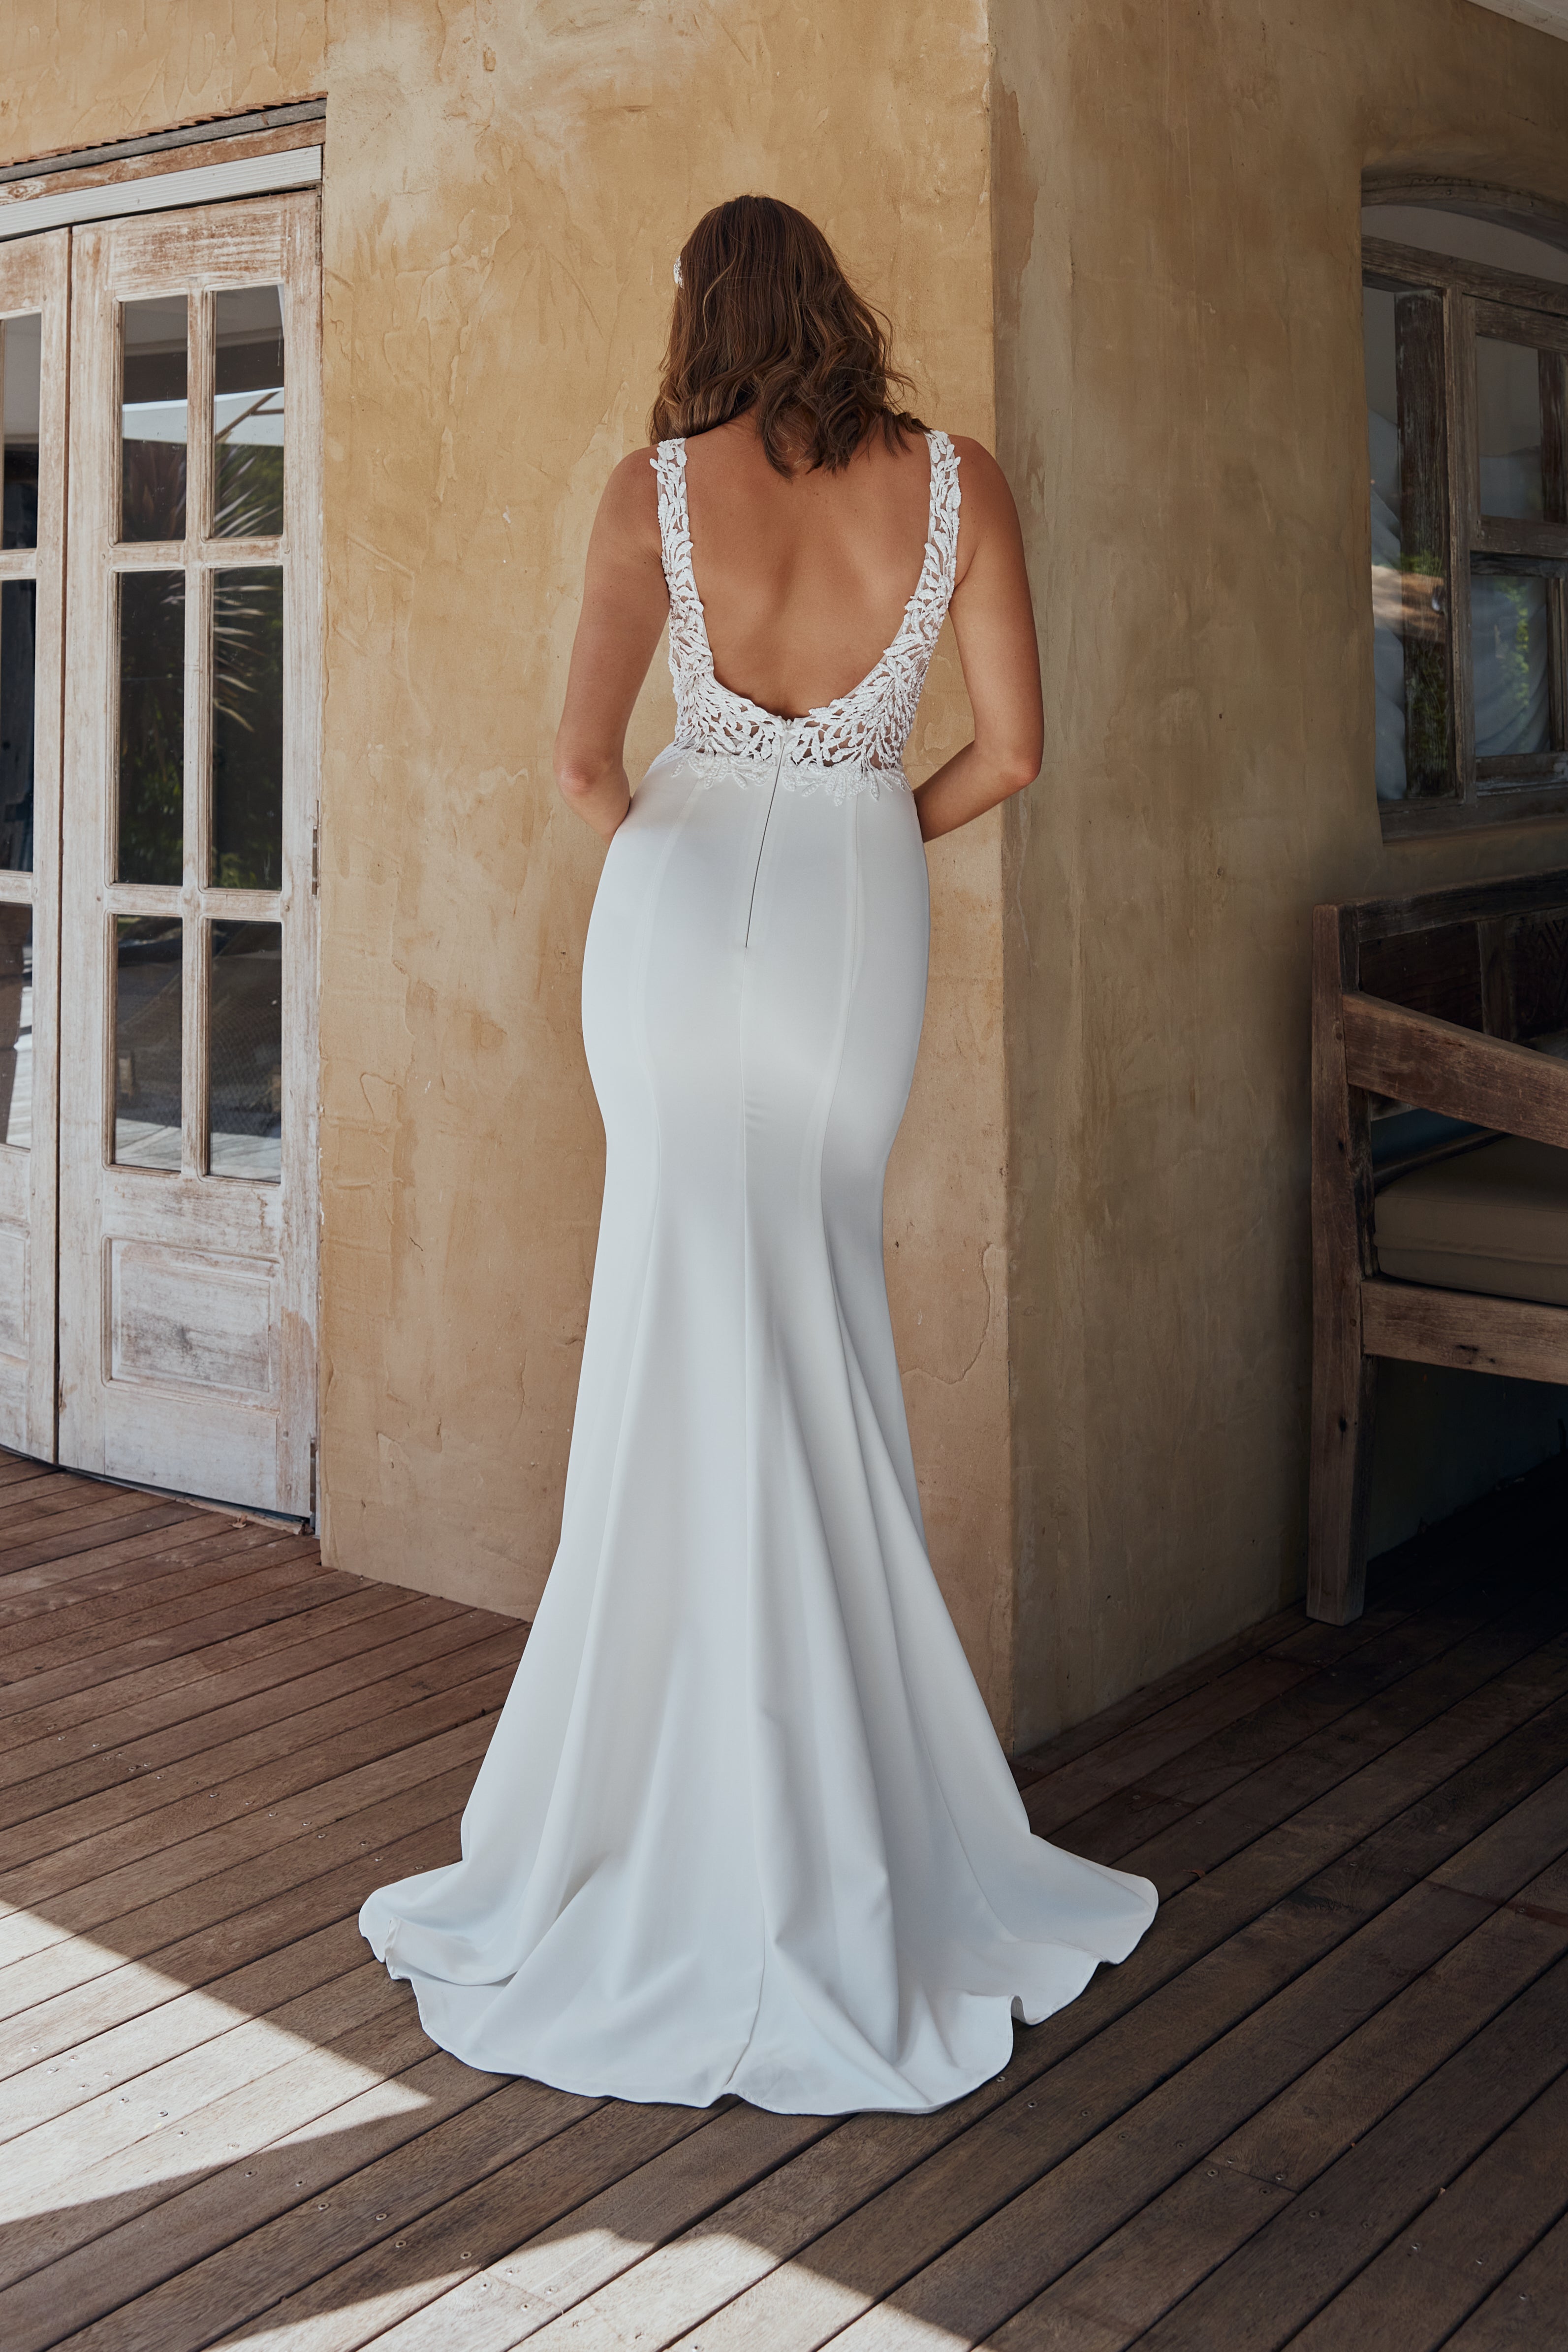 Simone by Tania Olsen Vintage White Wedding Dress